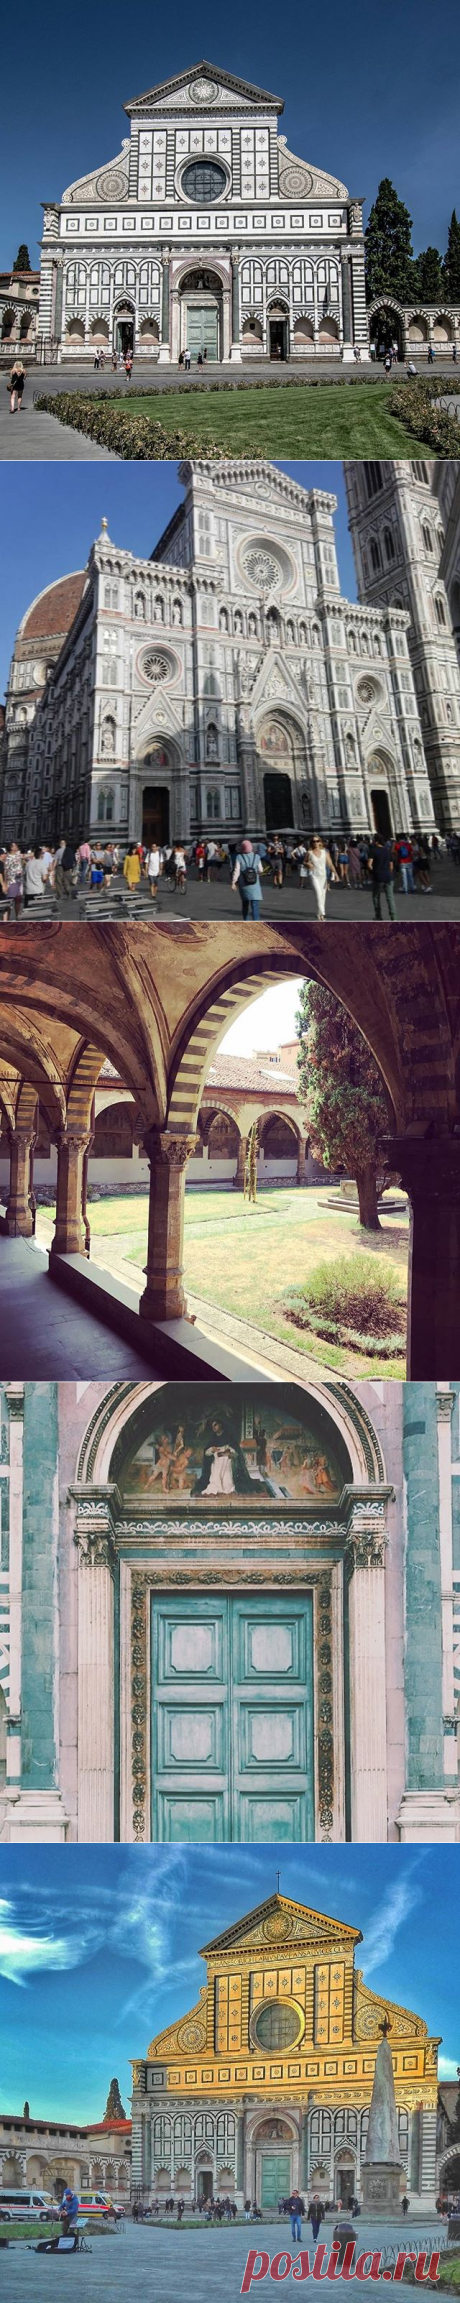 Firenze Santa Maria Novella • Фото и видео в Instagram